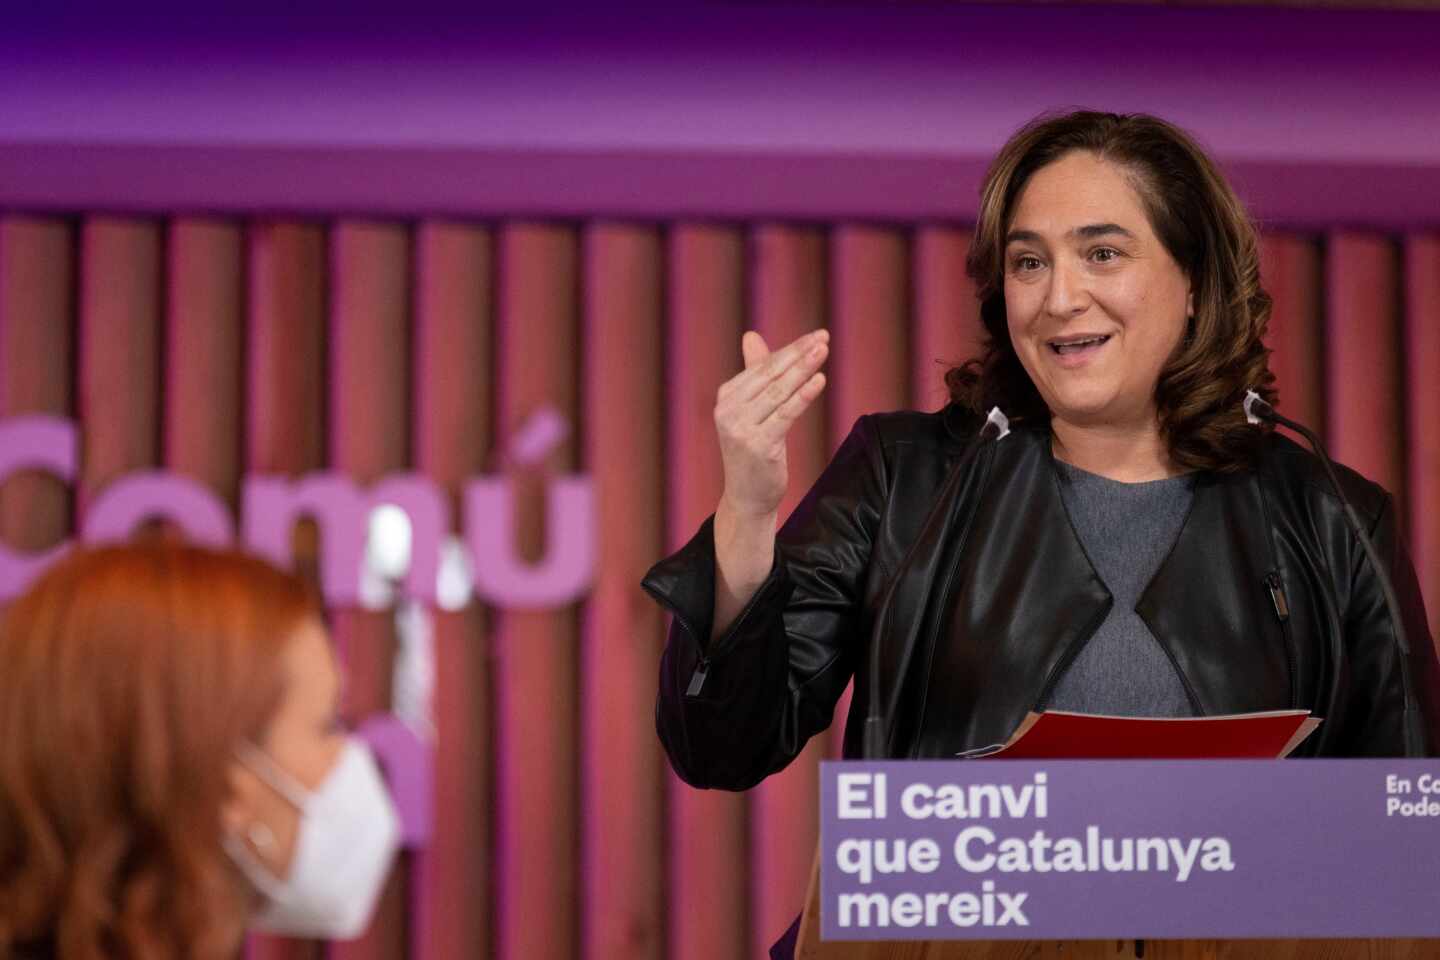 La alcaldesa de Barcelona, Ada Colau (en la imagen), interviene durante un acto en Barcelona.